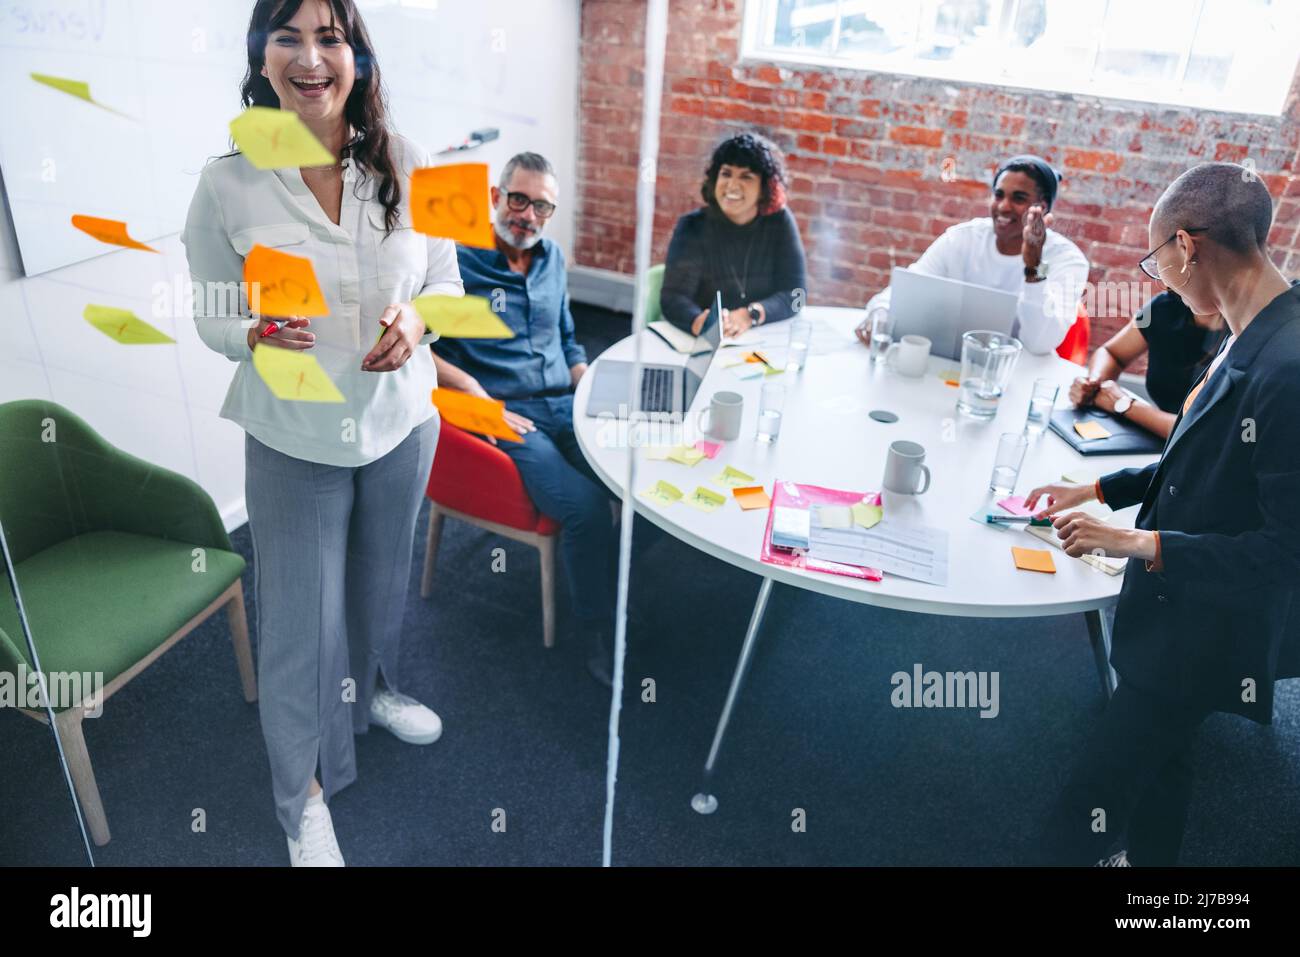 Lächelnde Geschäftsfrau, die sich mit ihren Kollegen im Hintergrund an einer Glaswand Notizen macht. Kreative junge Geschäftsfrau, die ihre Ideen mit ihrem Team teilt Stockfoto